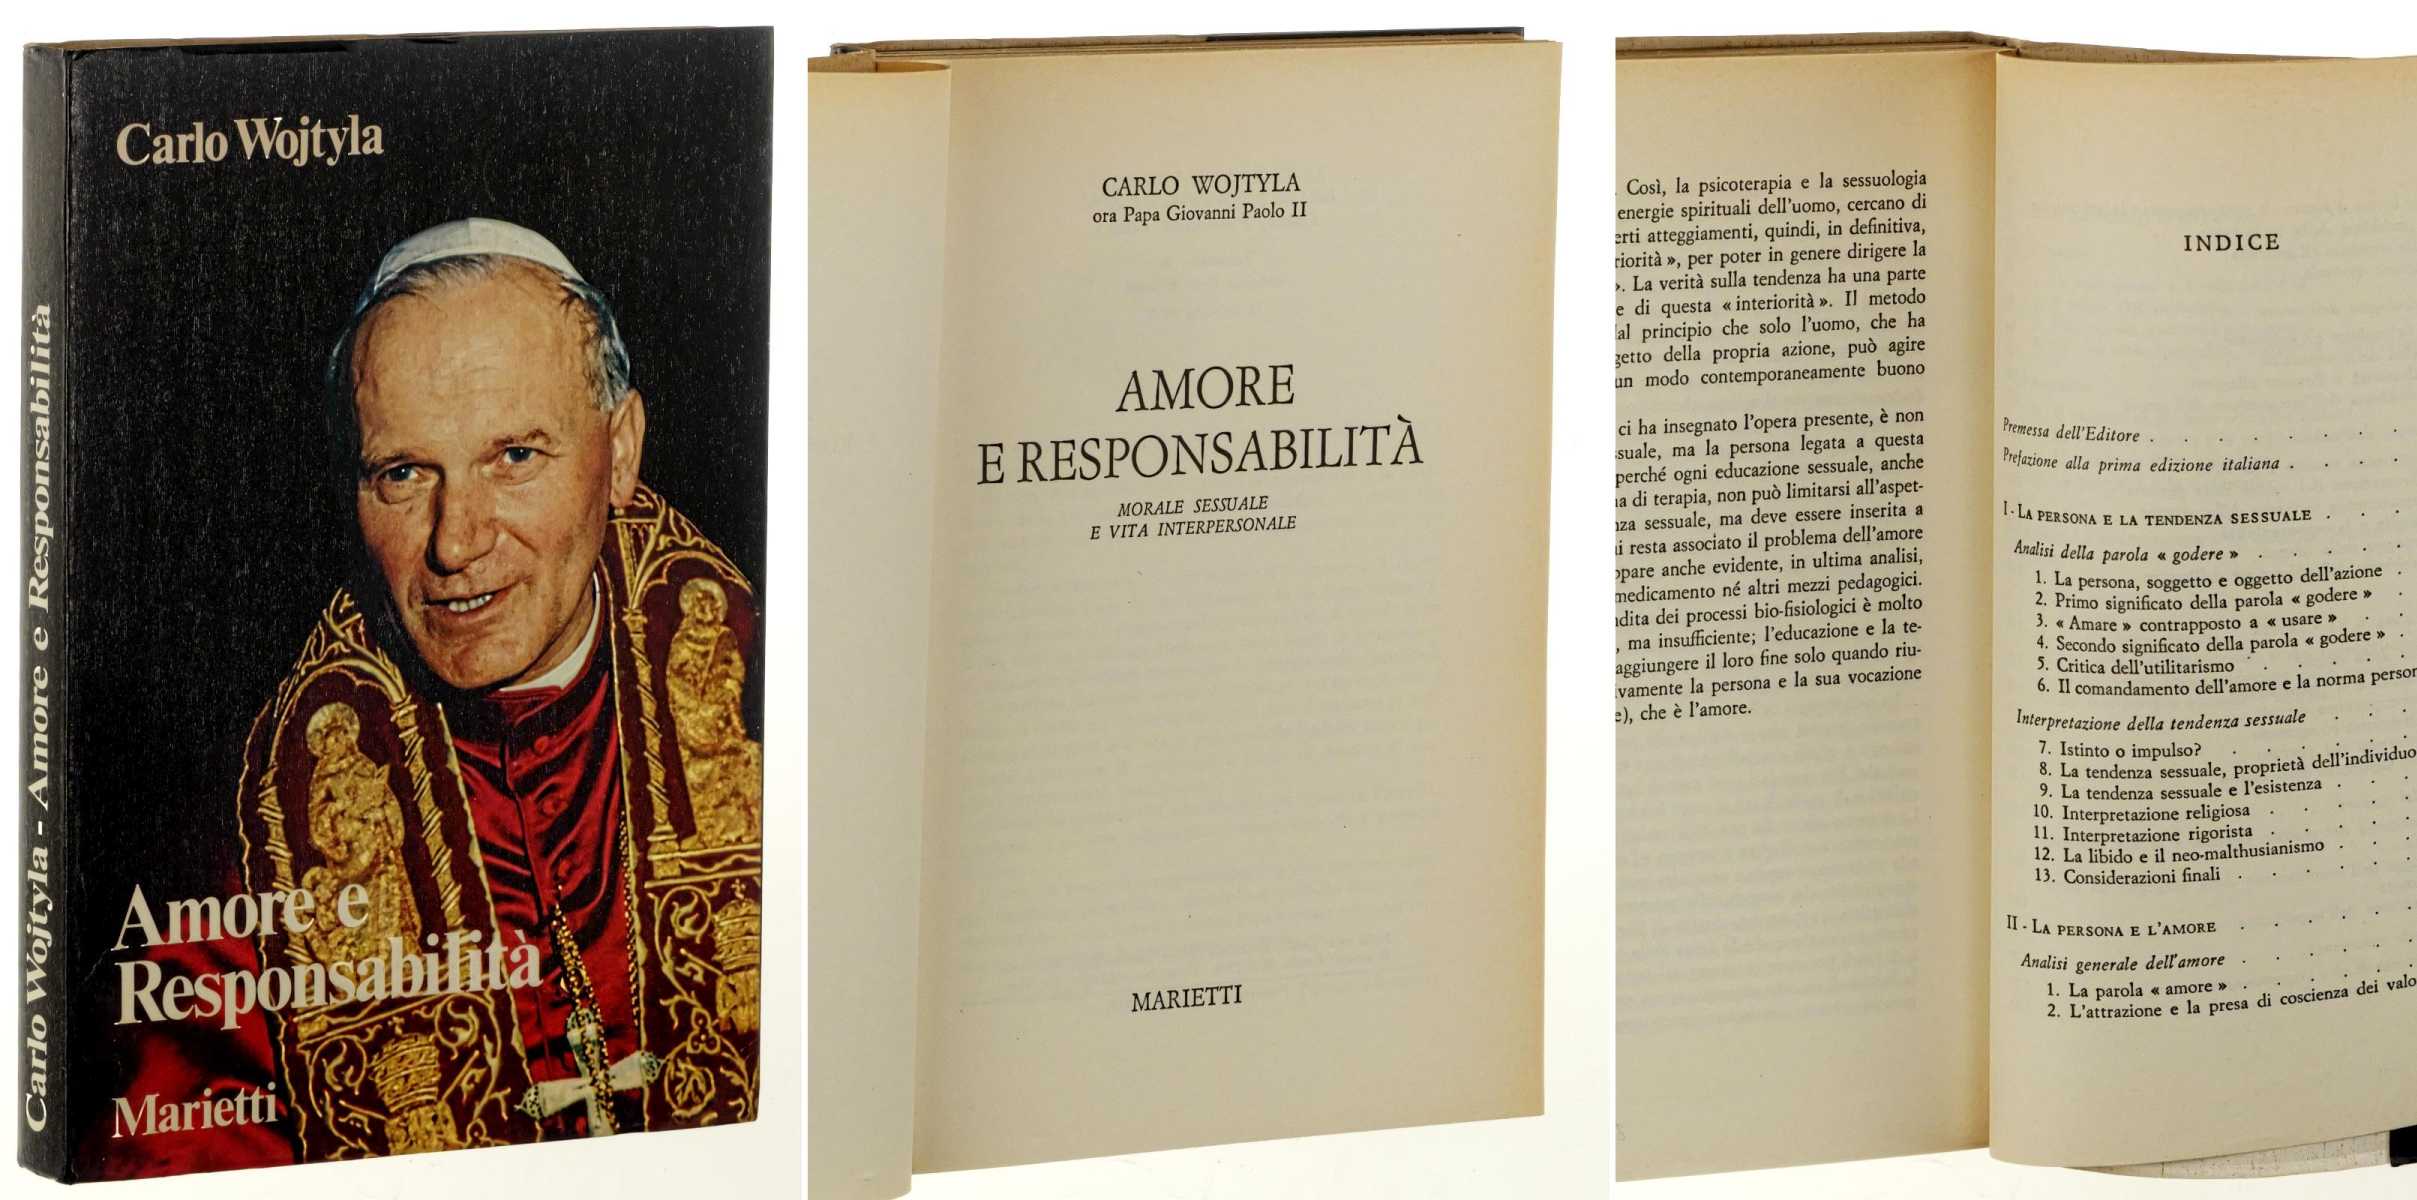 Wojtyla, Carlo/ Grionvanni Paulo II:  Amore e responsabilità. Morale sessuale e vita interpersonale. 